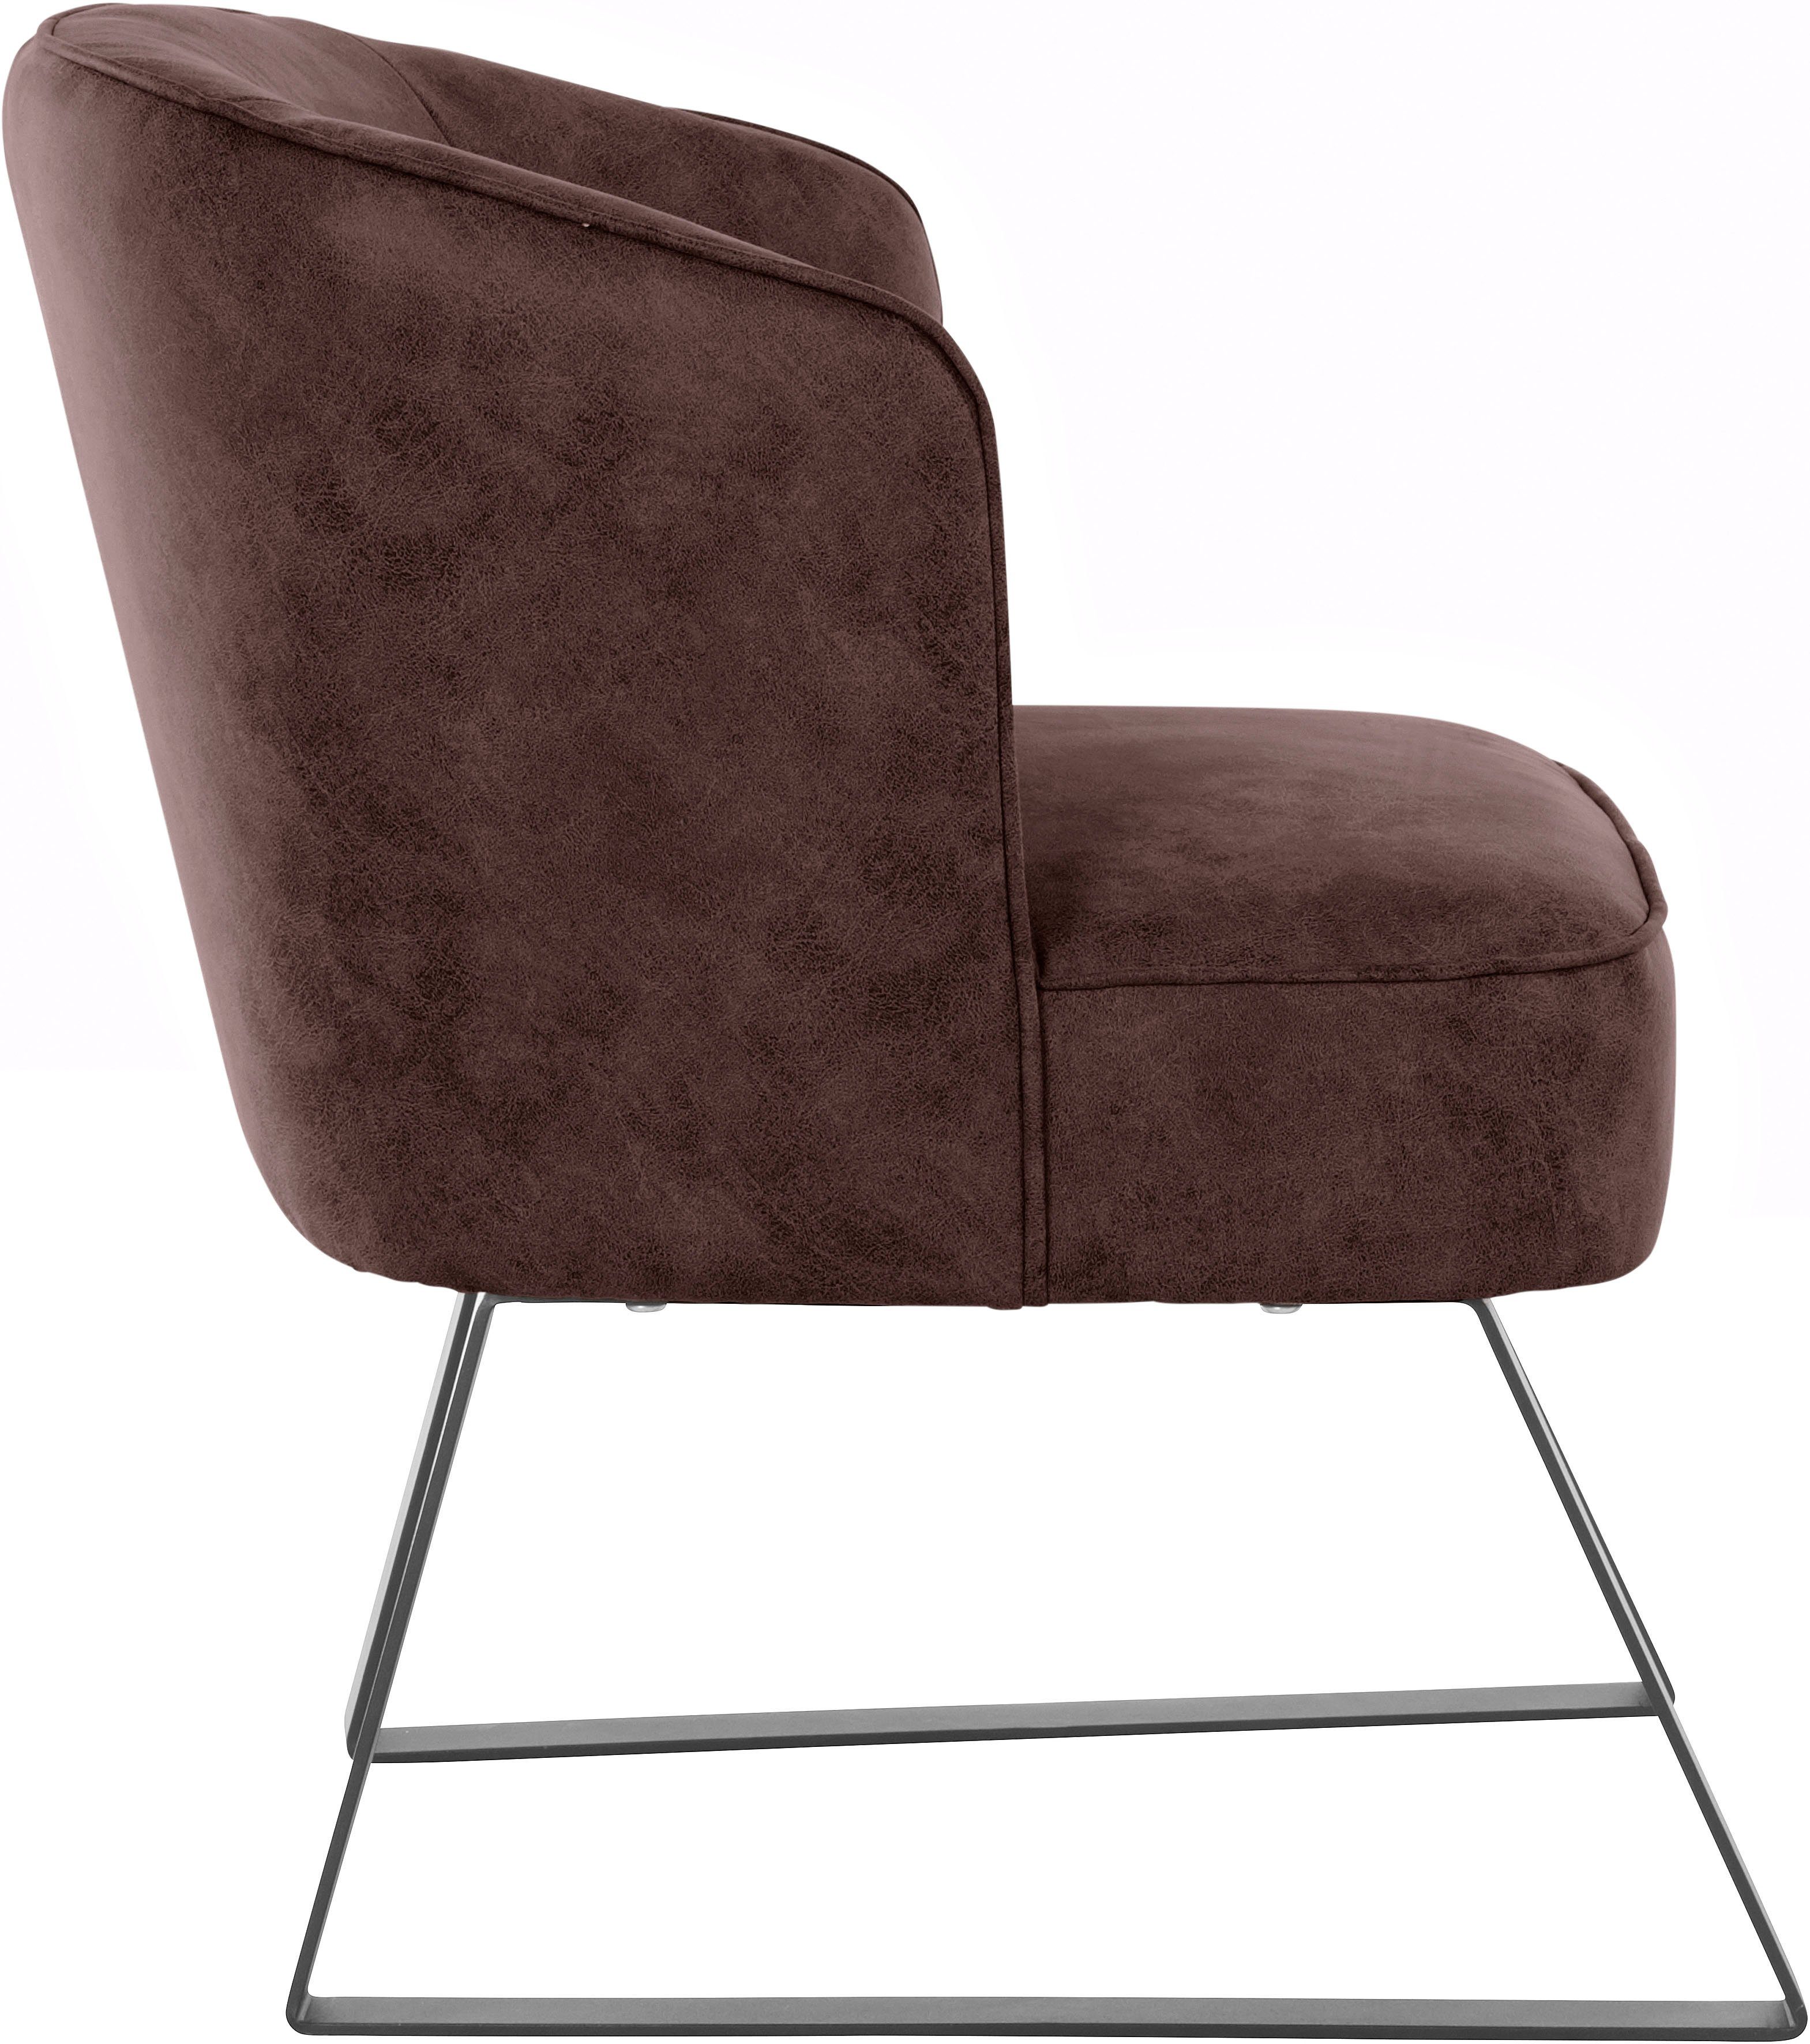 exxpo - sofa fashion Sessel in Americano, Stck. mit Qualitäten, Keder und Metallfüßen, verschiedenen 1 Bezug